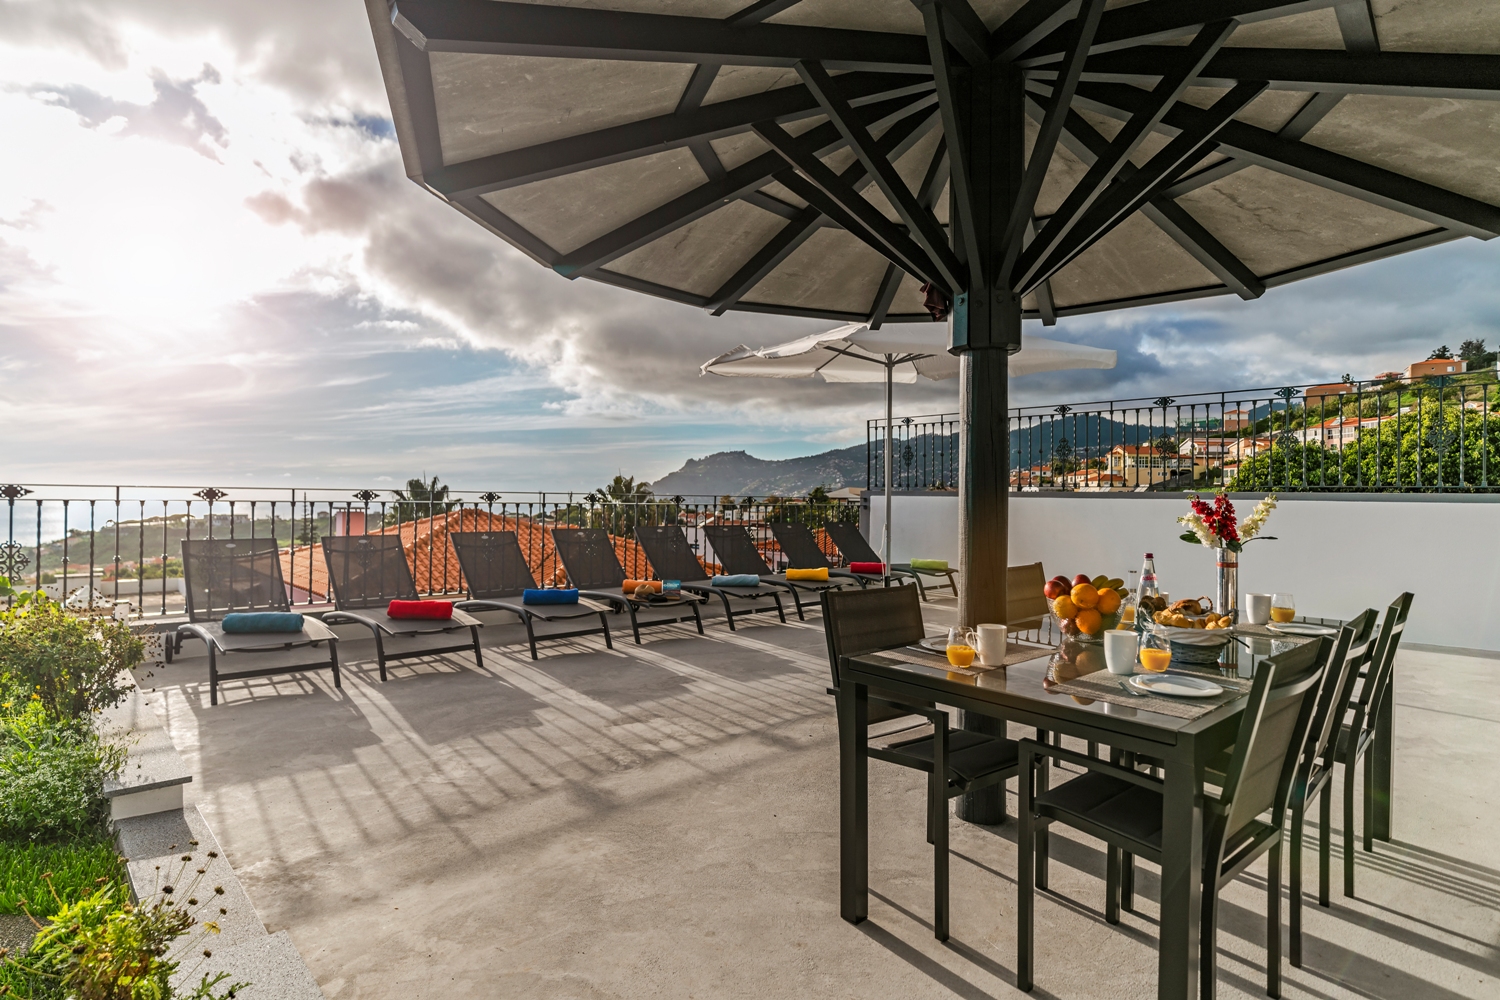 Fabulous villa in Funchal, panoramic sea-view, heated pool | BelAir 3